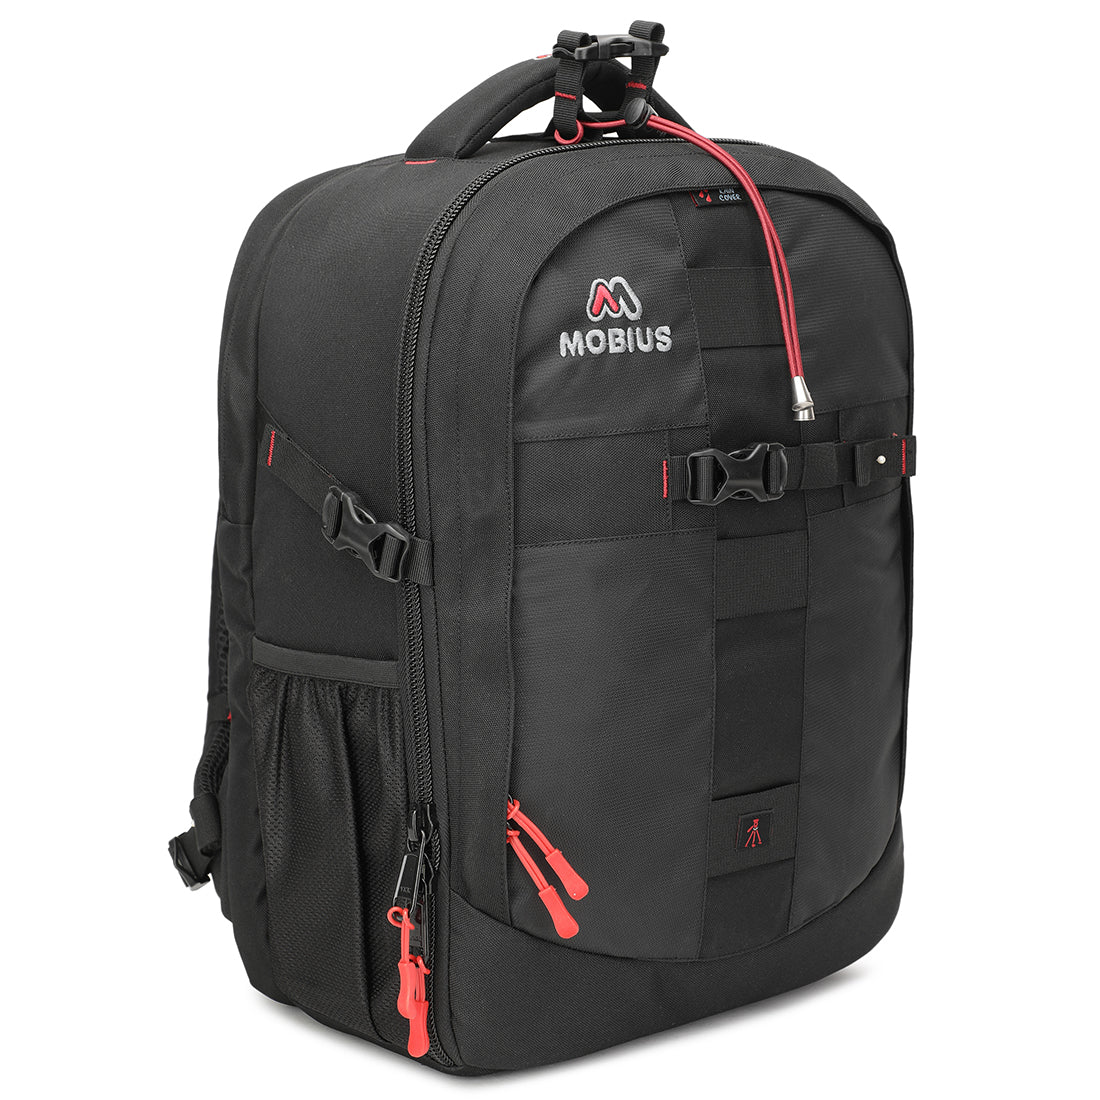 Mobius Trendsetter Pro DSLR Backpack